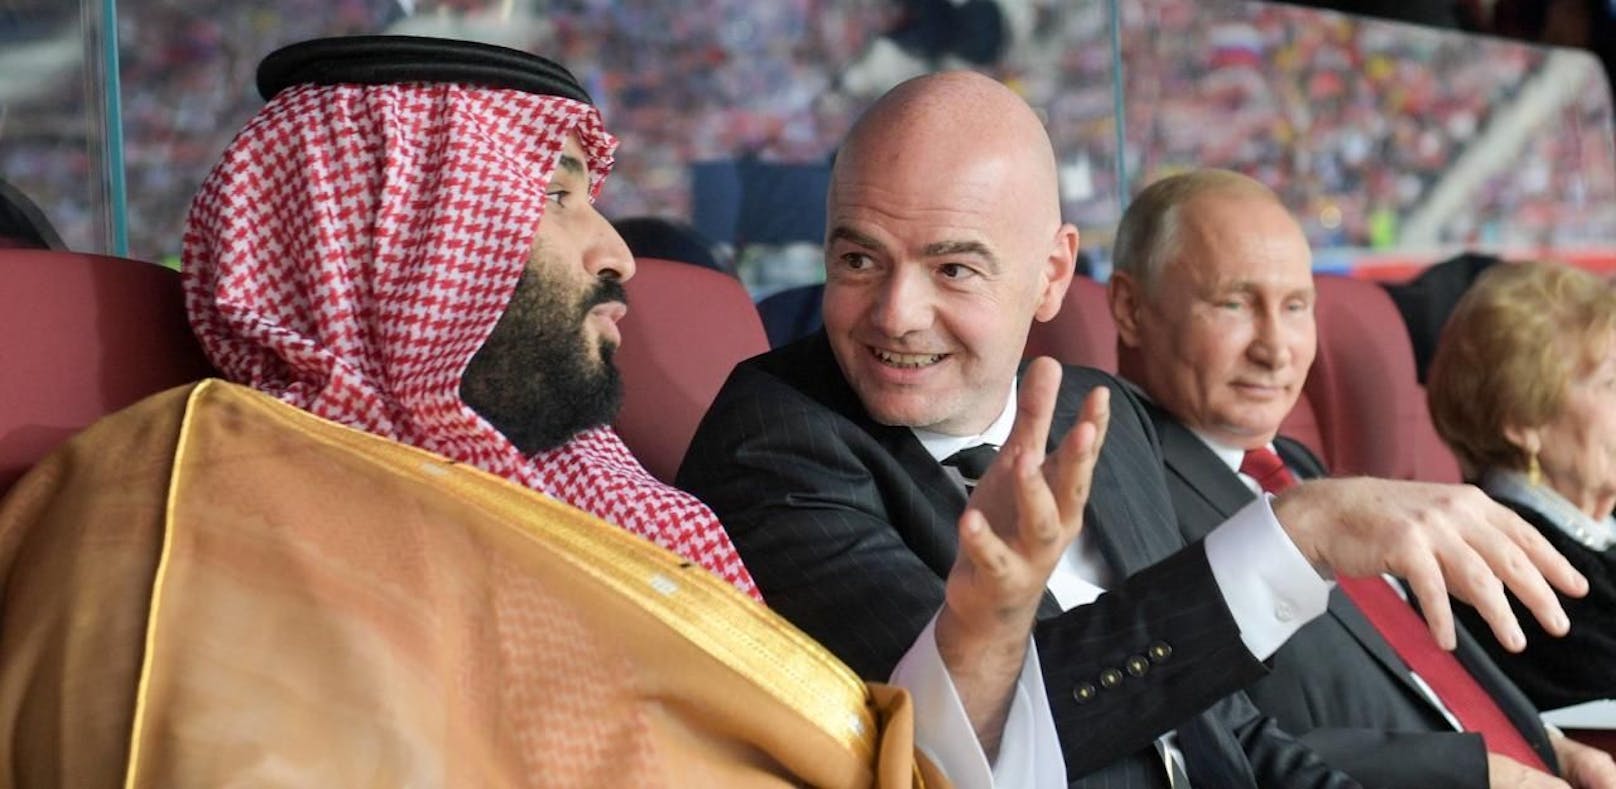 WM 2022: Katar patzte Rivalen mit Fake-News an